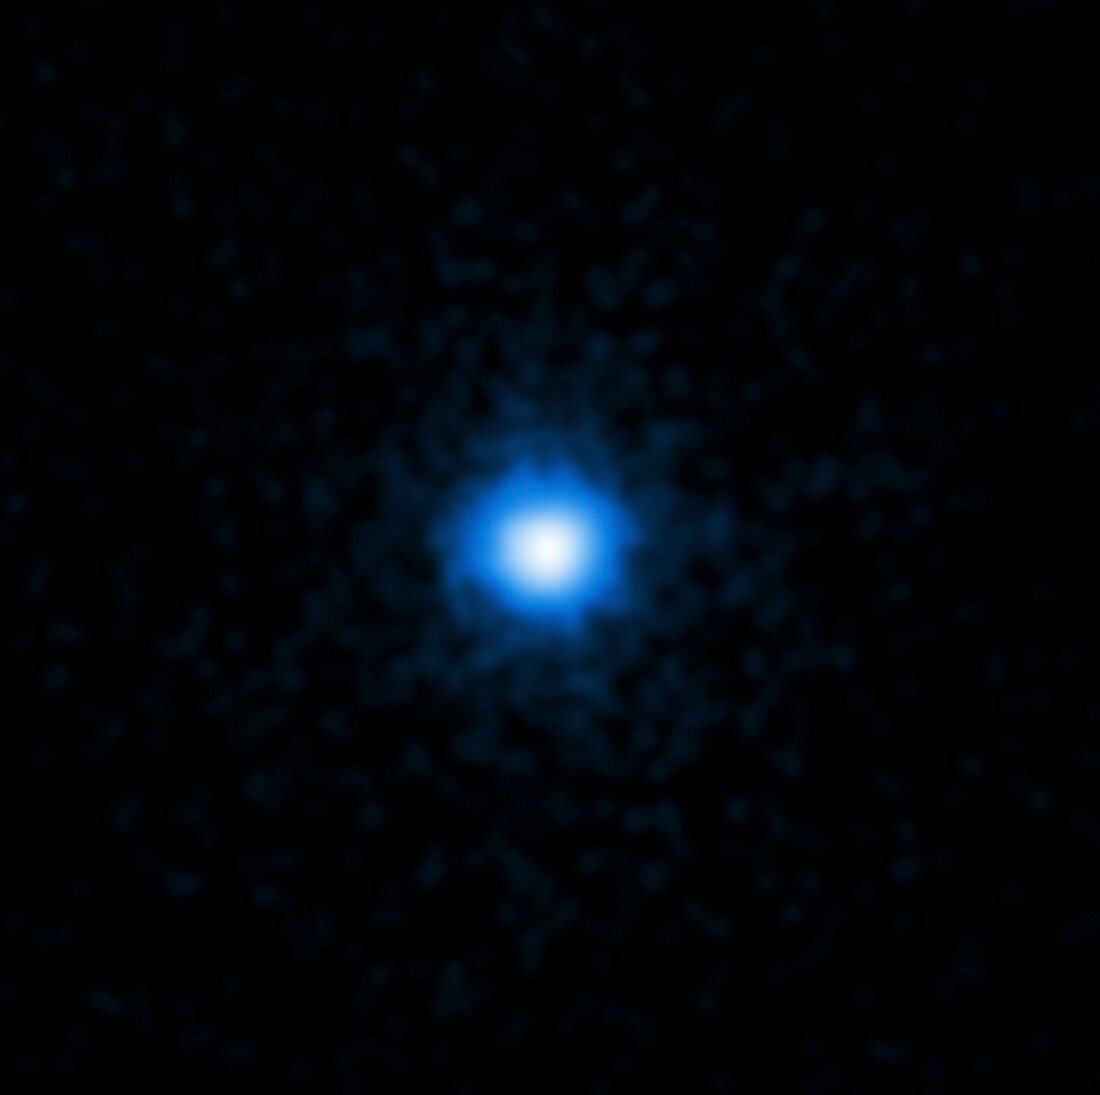 Gamma ray burst 110328A,Chandra image